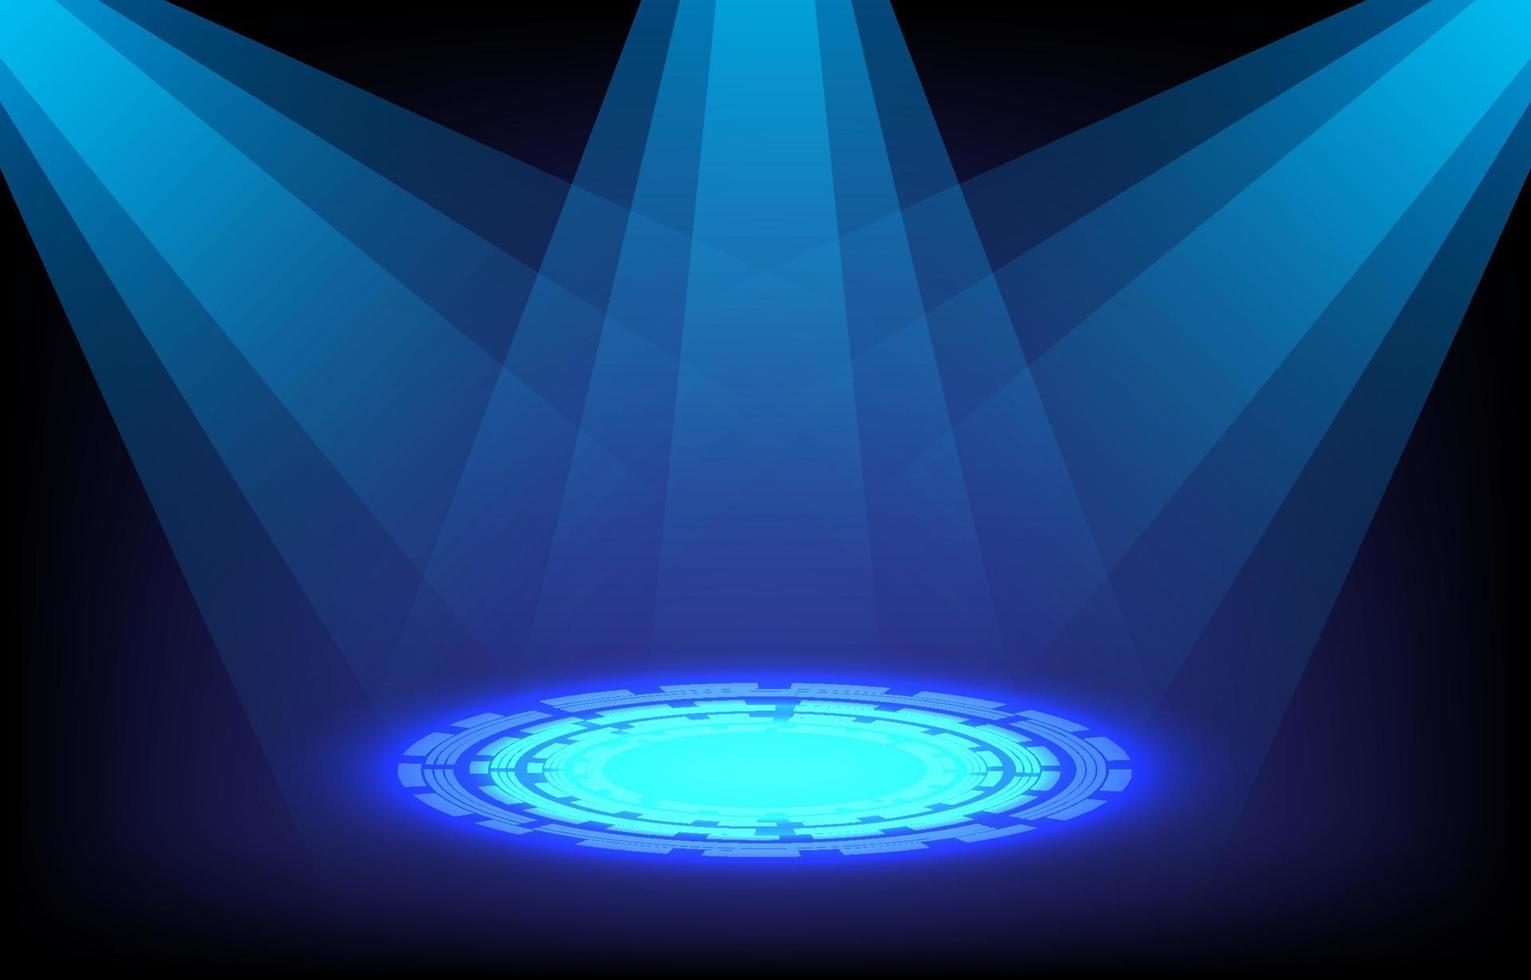 palco neon azul com holofotes. ilustração vetorial. luz do palco, pódio, portão de dobra no conceito de tecnologia futurista. pódio de círculo futurista para exibição de gadget brilha no fundo escuro. vetor